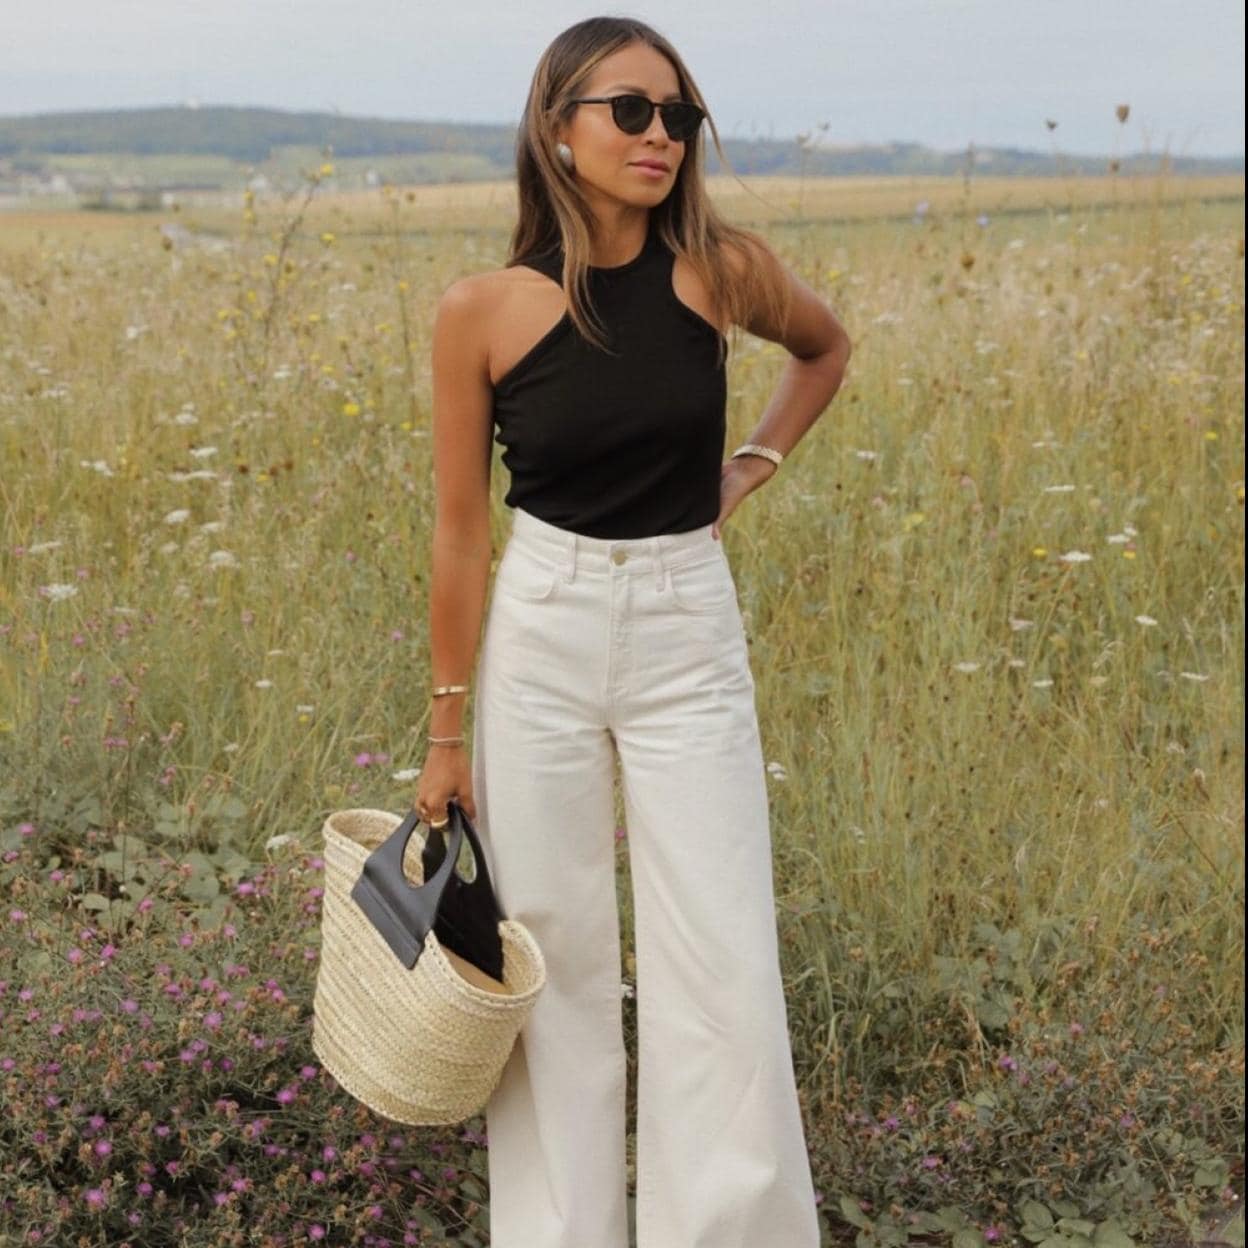 Tu compra serán estos vaqueros blancos: lo dice Zara y reafirman las expertas moda | Mujer Hoy